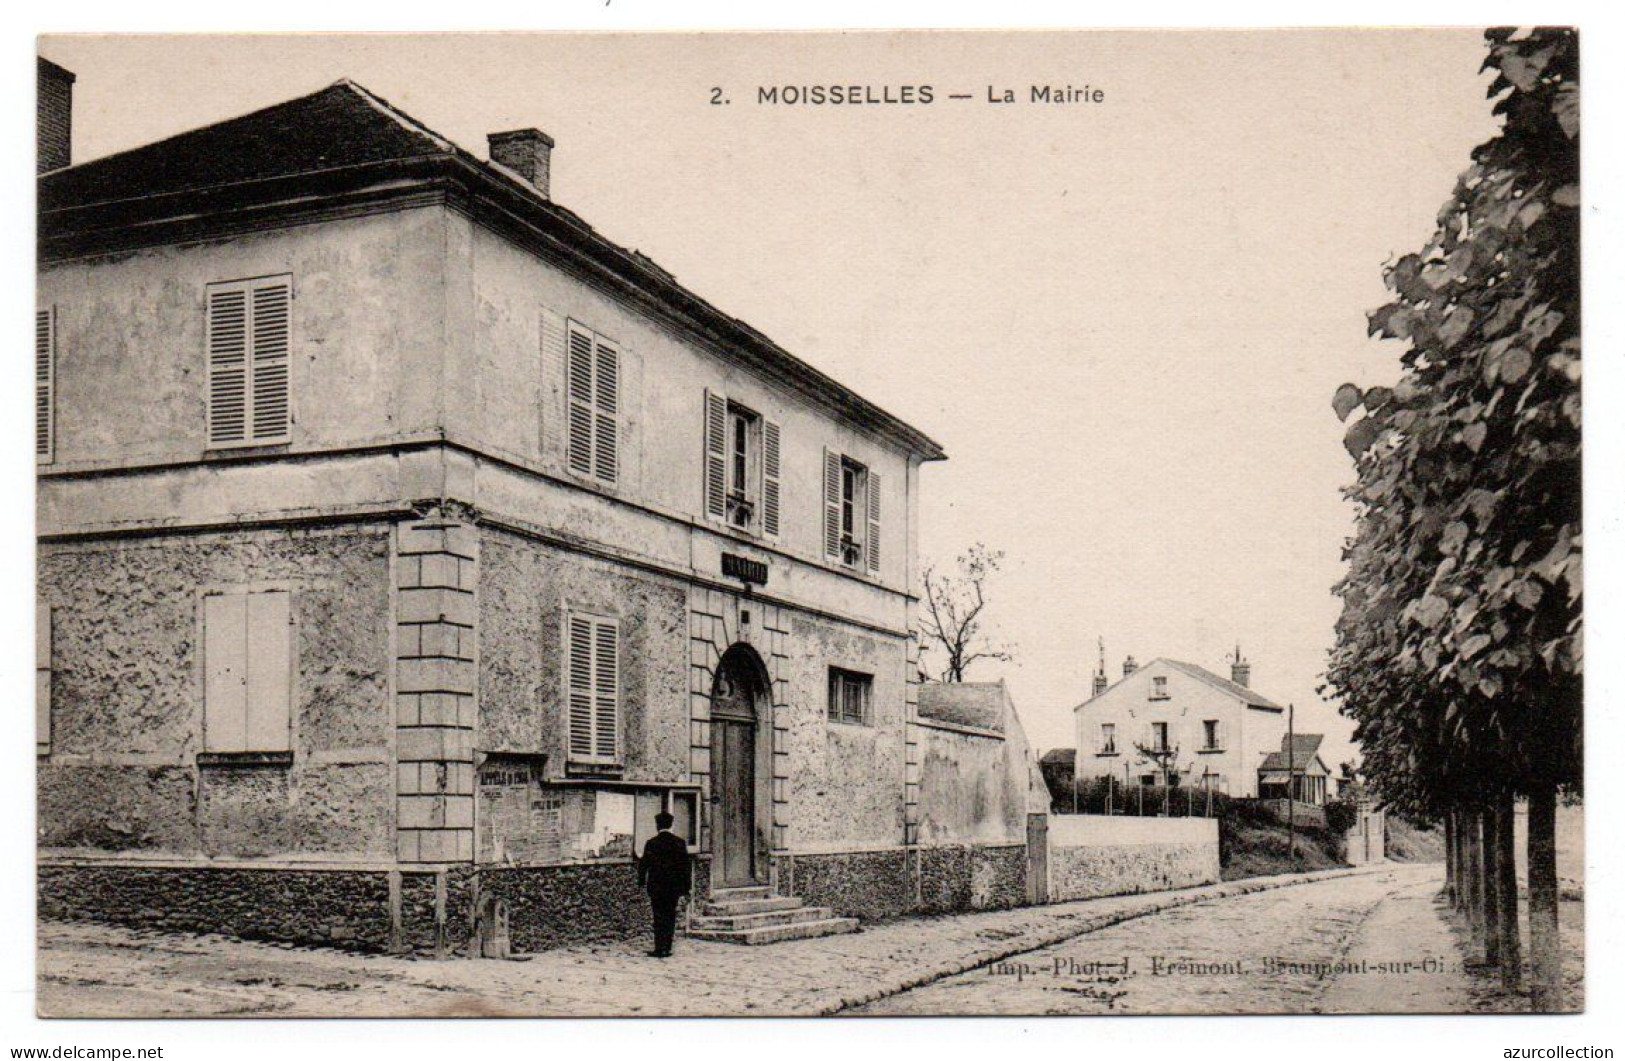 La Mairie - Moisselles